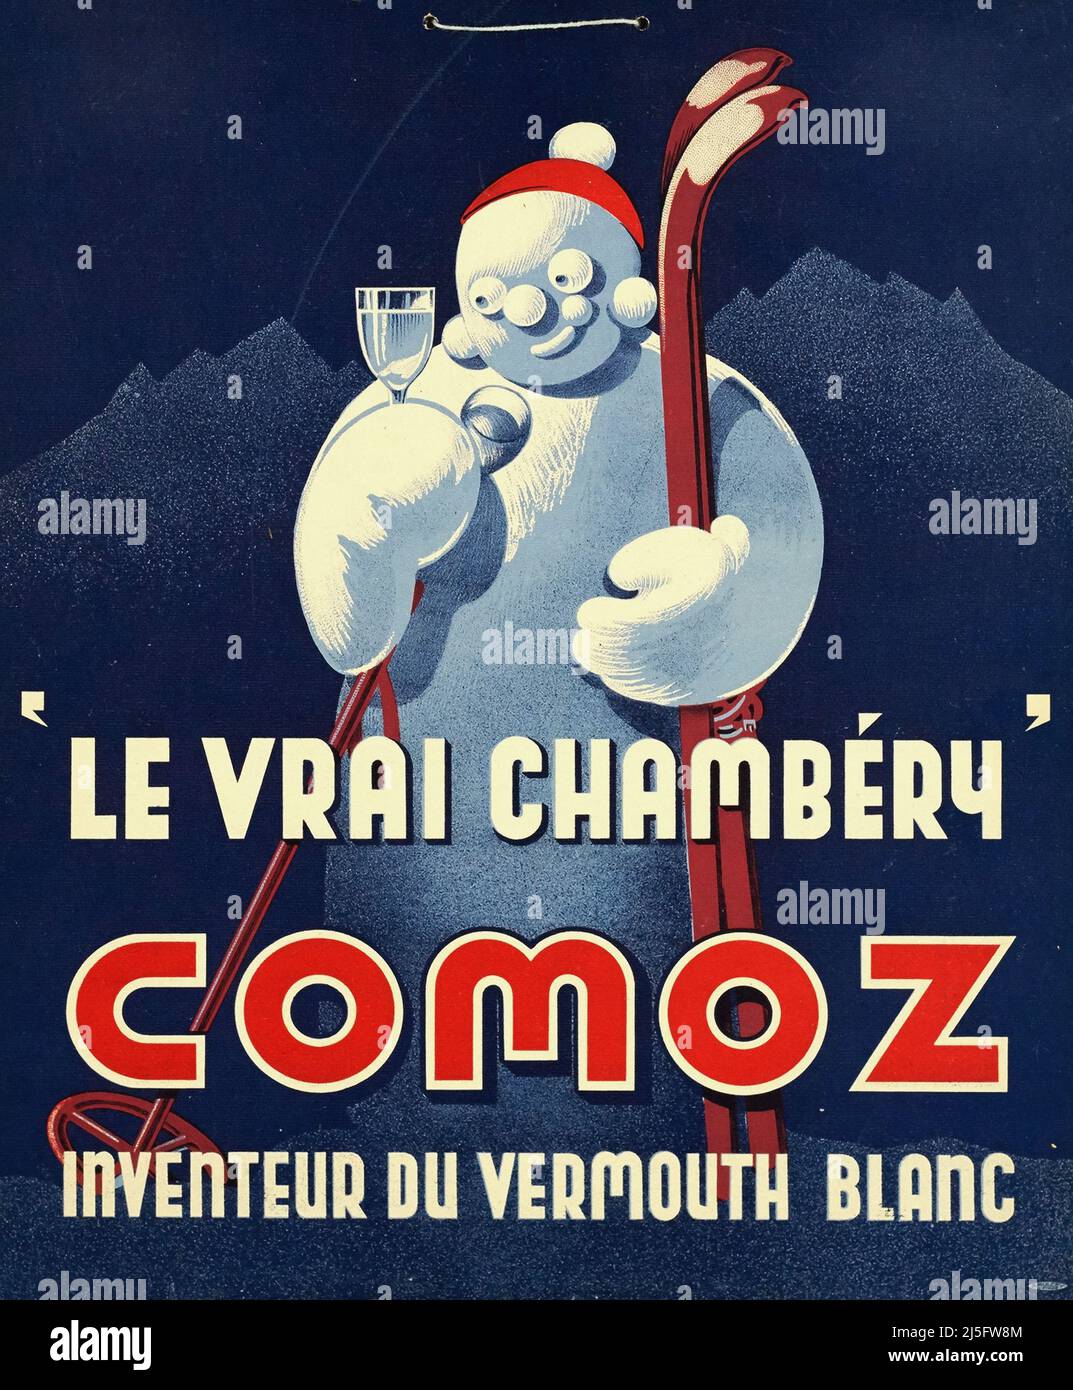 Affiche publicitaire vintage - Comoz - le Vrai Chambéry - affiche publicitaire pour la marque de vermouth. 1930s Banque D'Images